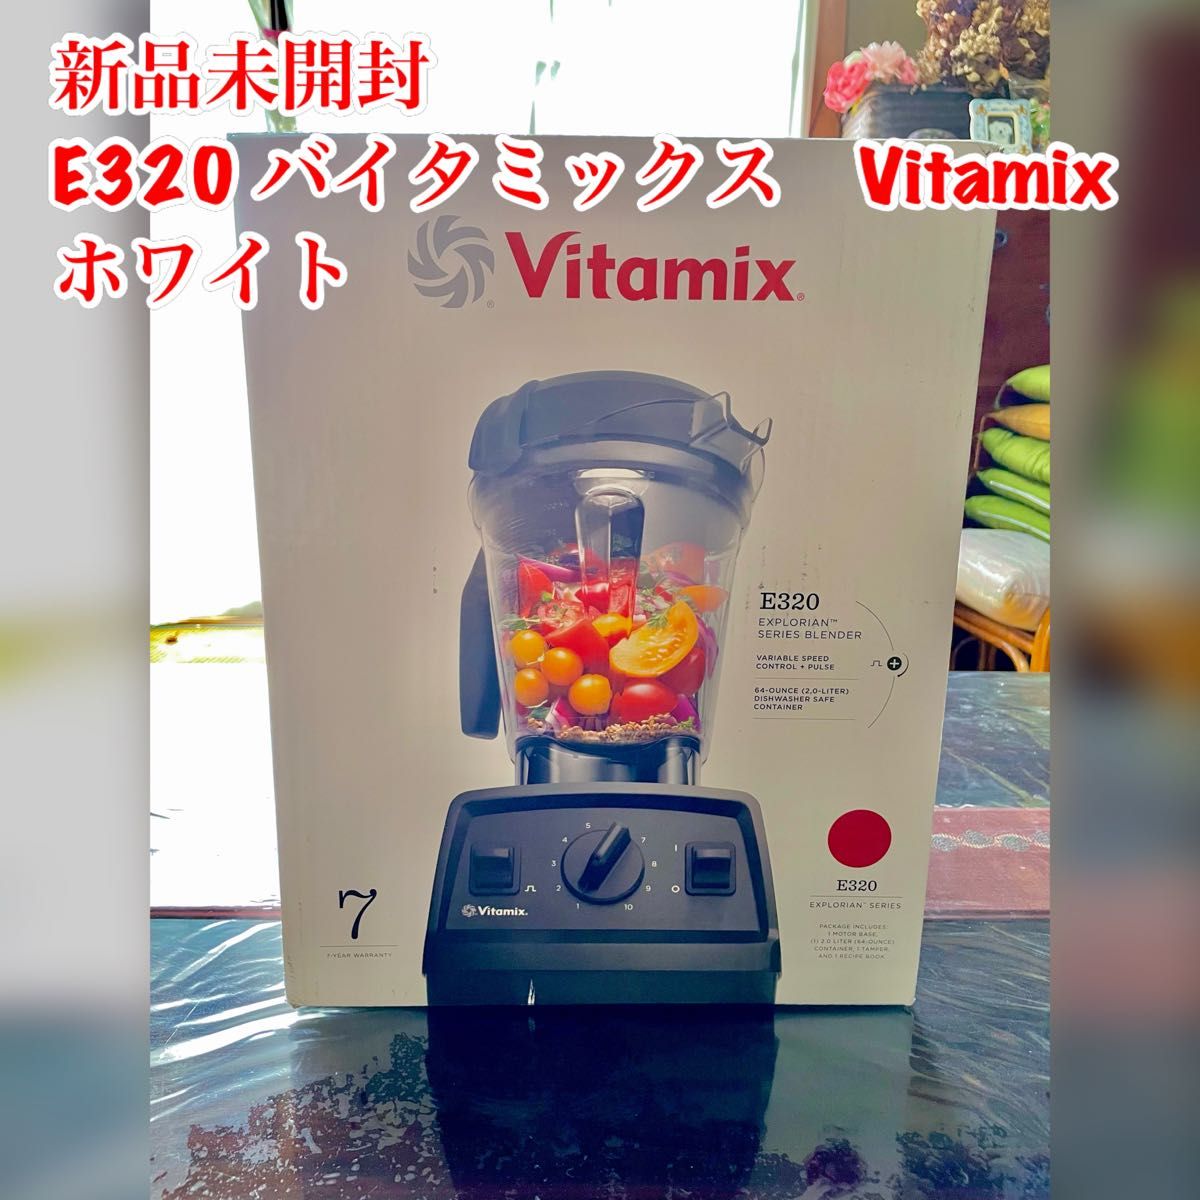 再入荷 vitamix v1200i 新品 未開封 スマートモデル ホワイト｜PayPay 